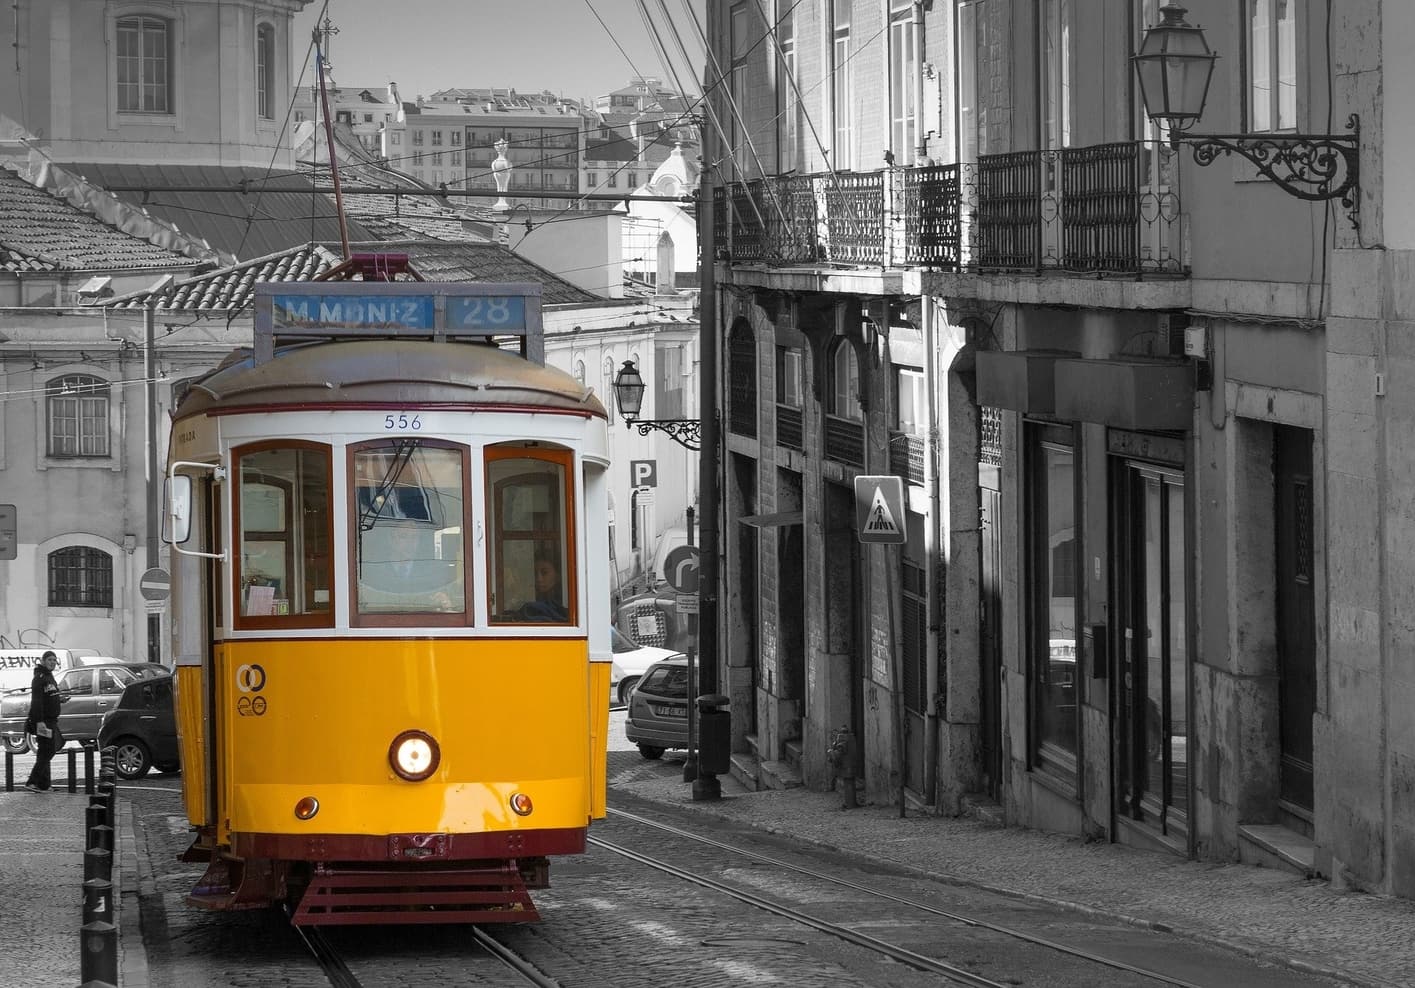 Restricciones de viaje en Portugal